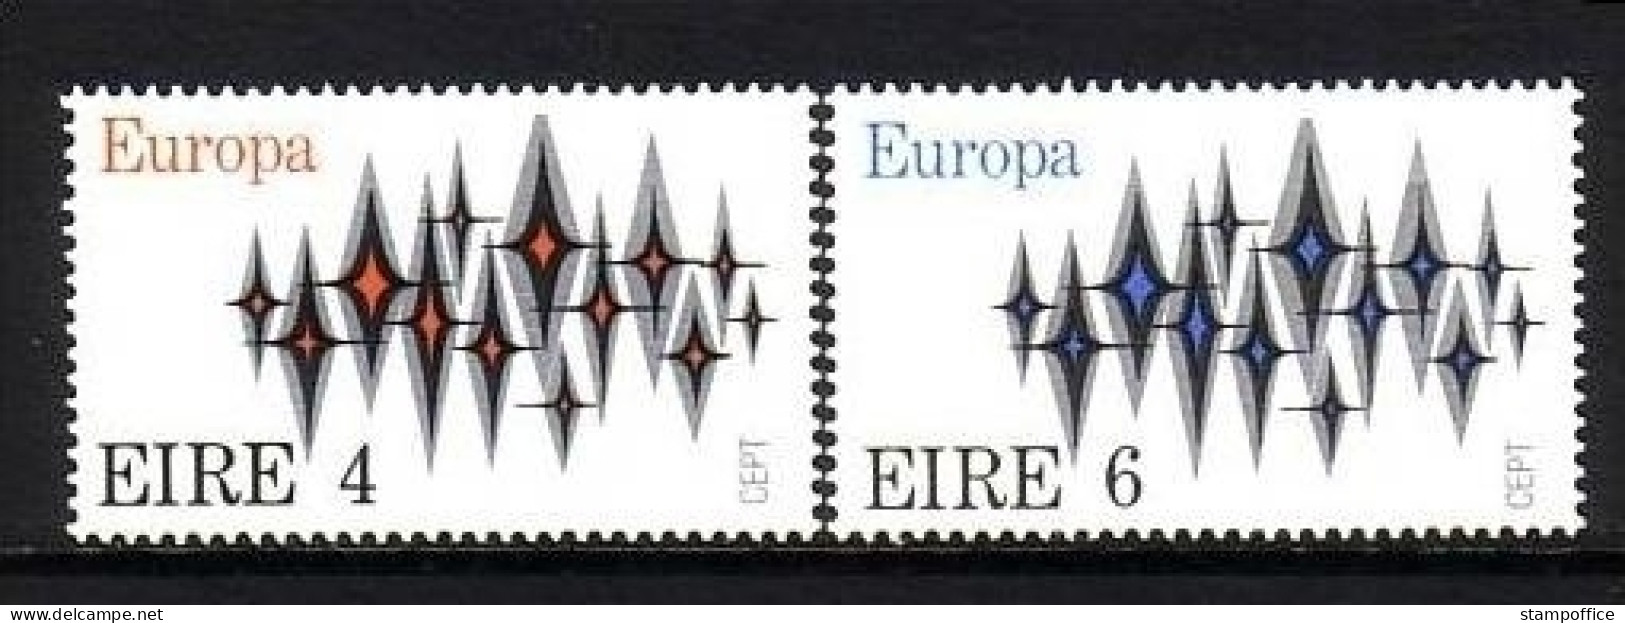 IRLAND MI-NR. 276-277 POSTFRISCH(MINT) EUROPA 1972 STERNE - 1972